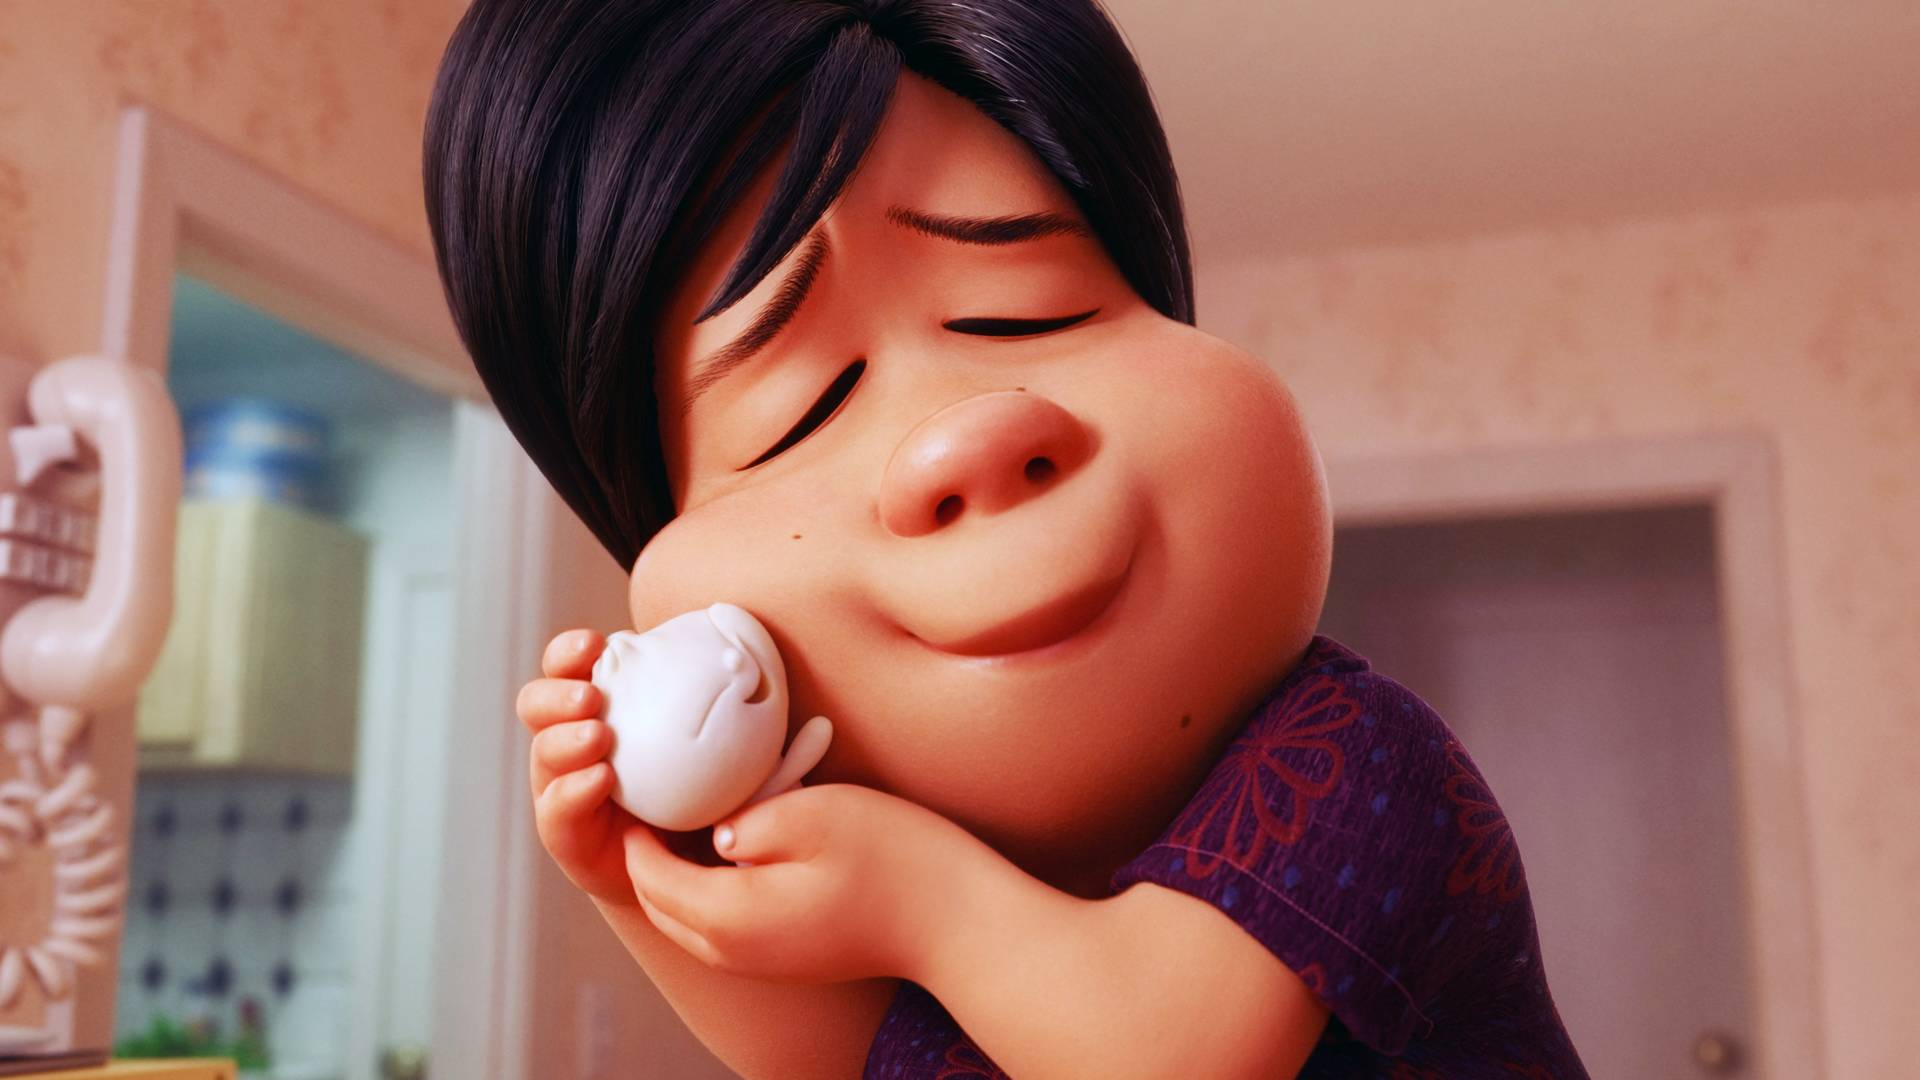 Pixarov crtać koji je sažeo ljubav u sedam minuta